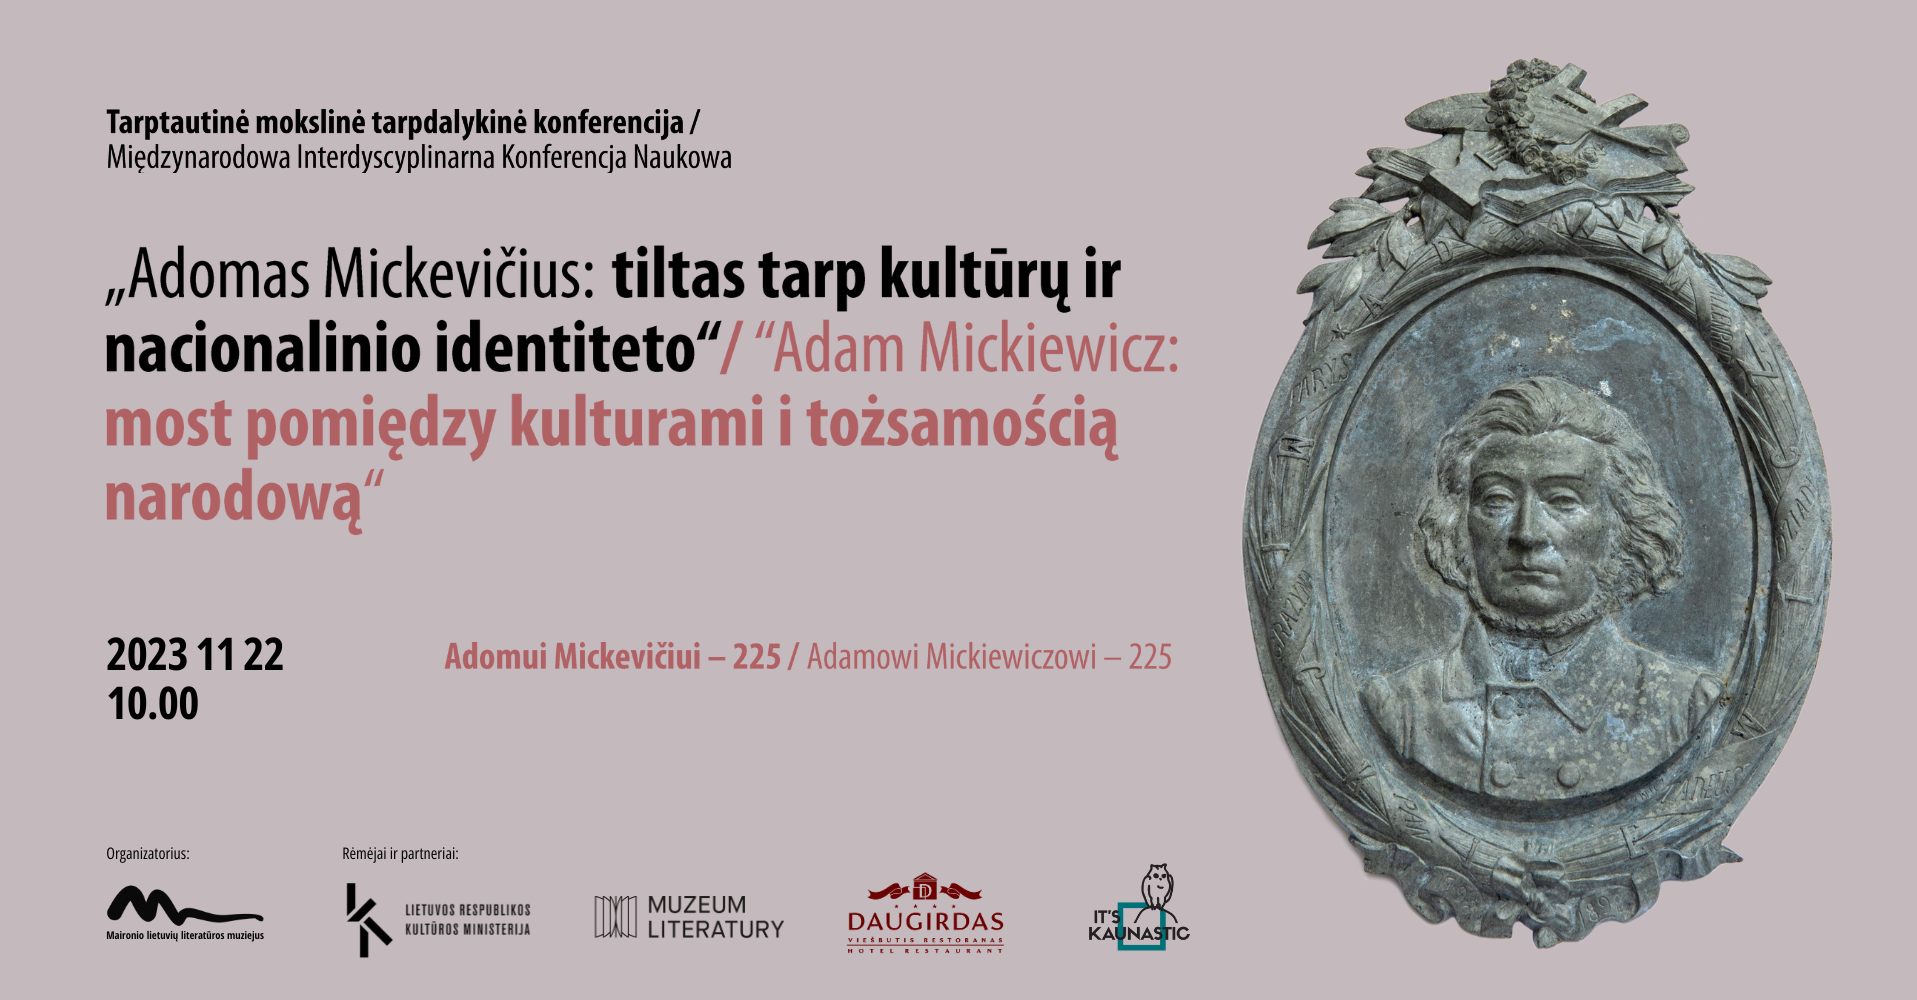 Tarptautinė mokslinė tarpdalykinė konferencija „Adomas Mickevičius: tiltas tarp kultūrų ir nacionalinio identiteto“